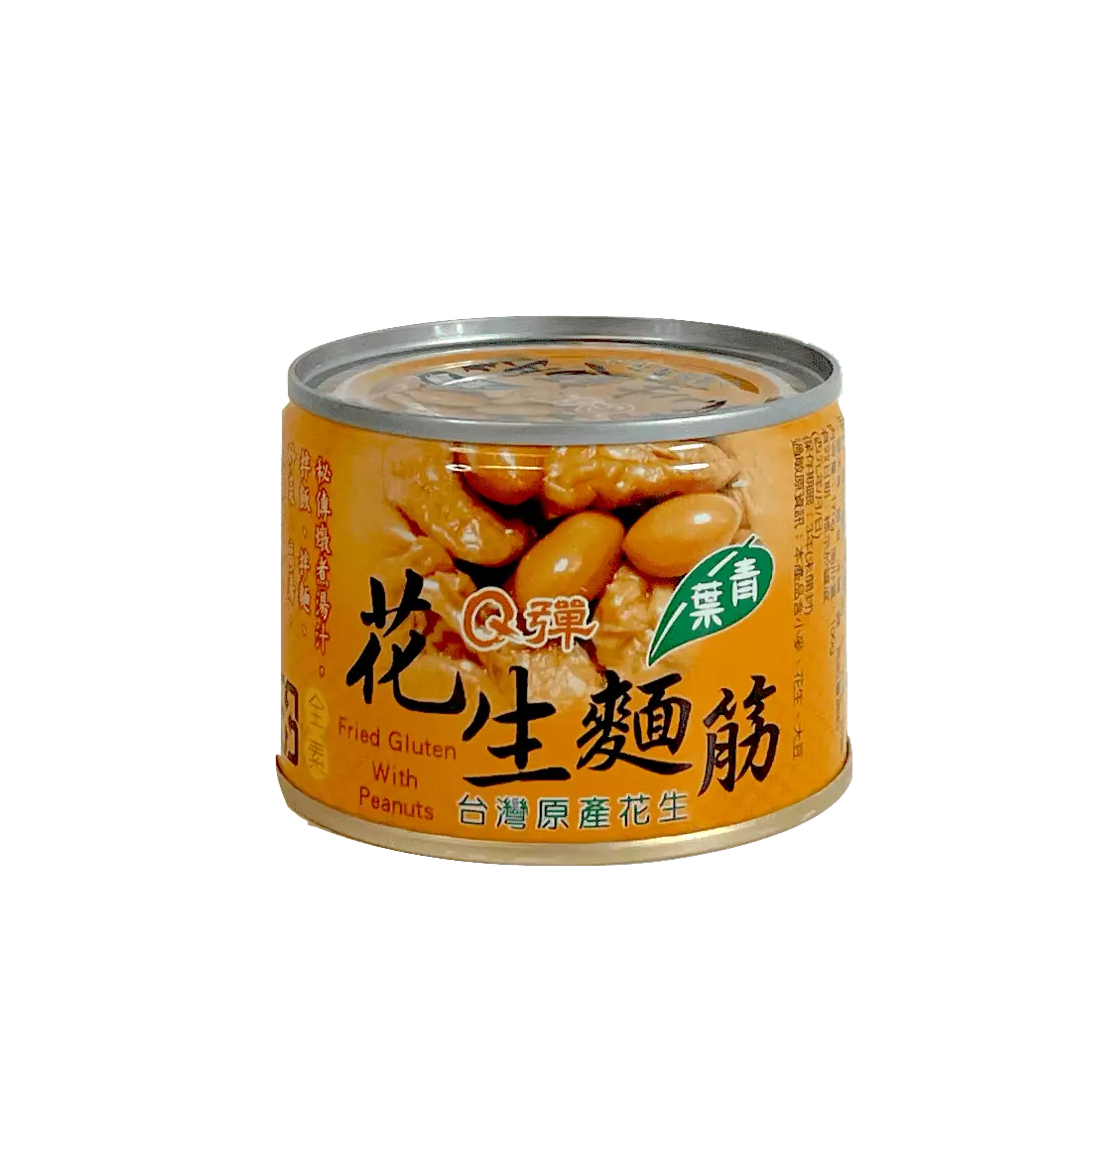 Fried Gluten With Peanuts 170g Hua Shen Mian Jin Chin Yeh Taiwan